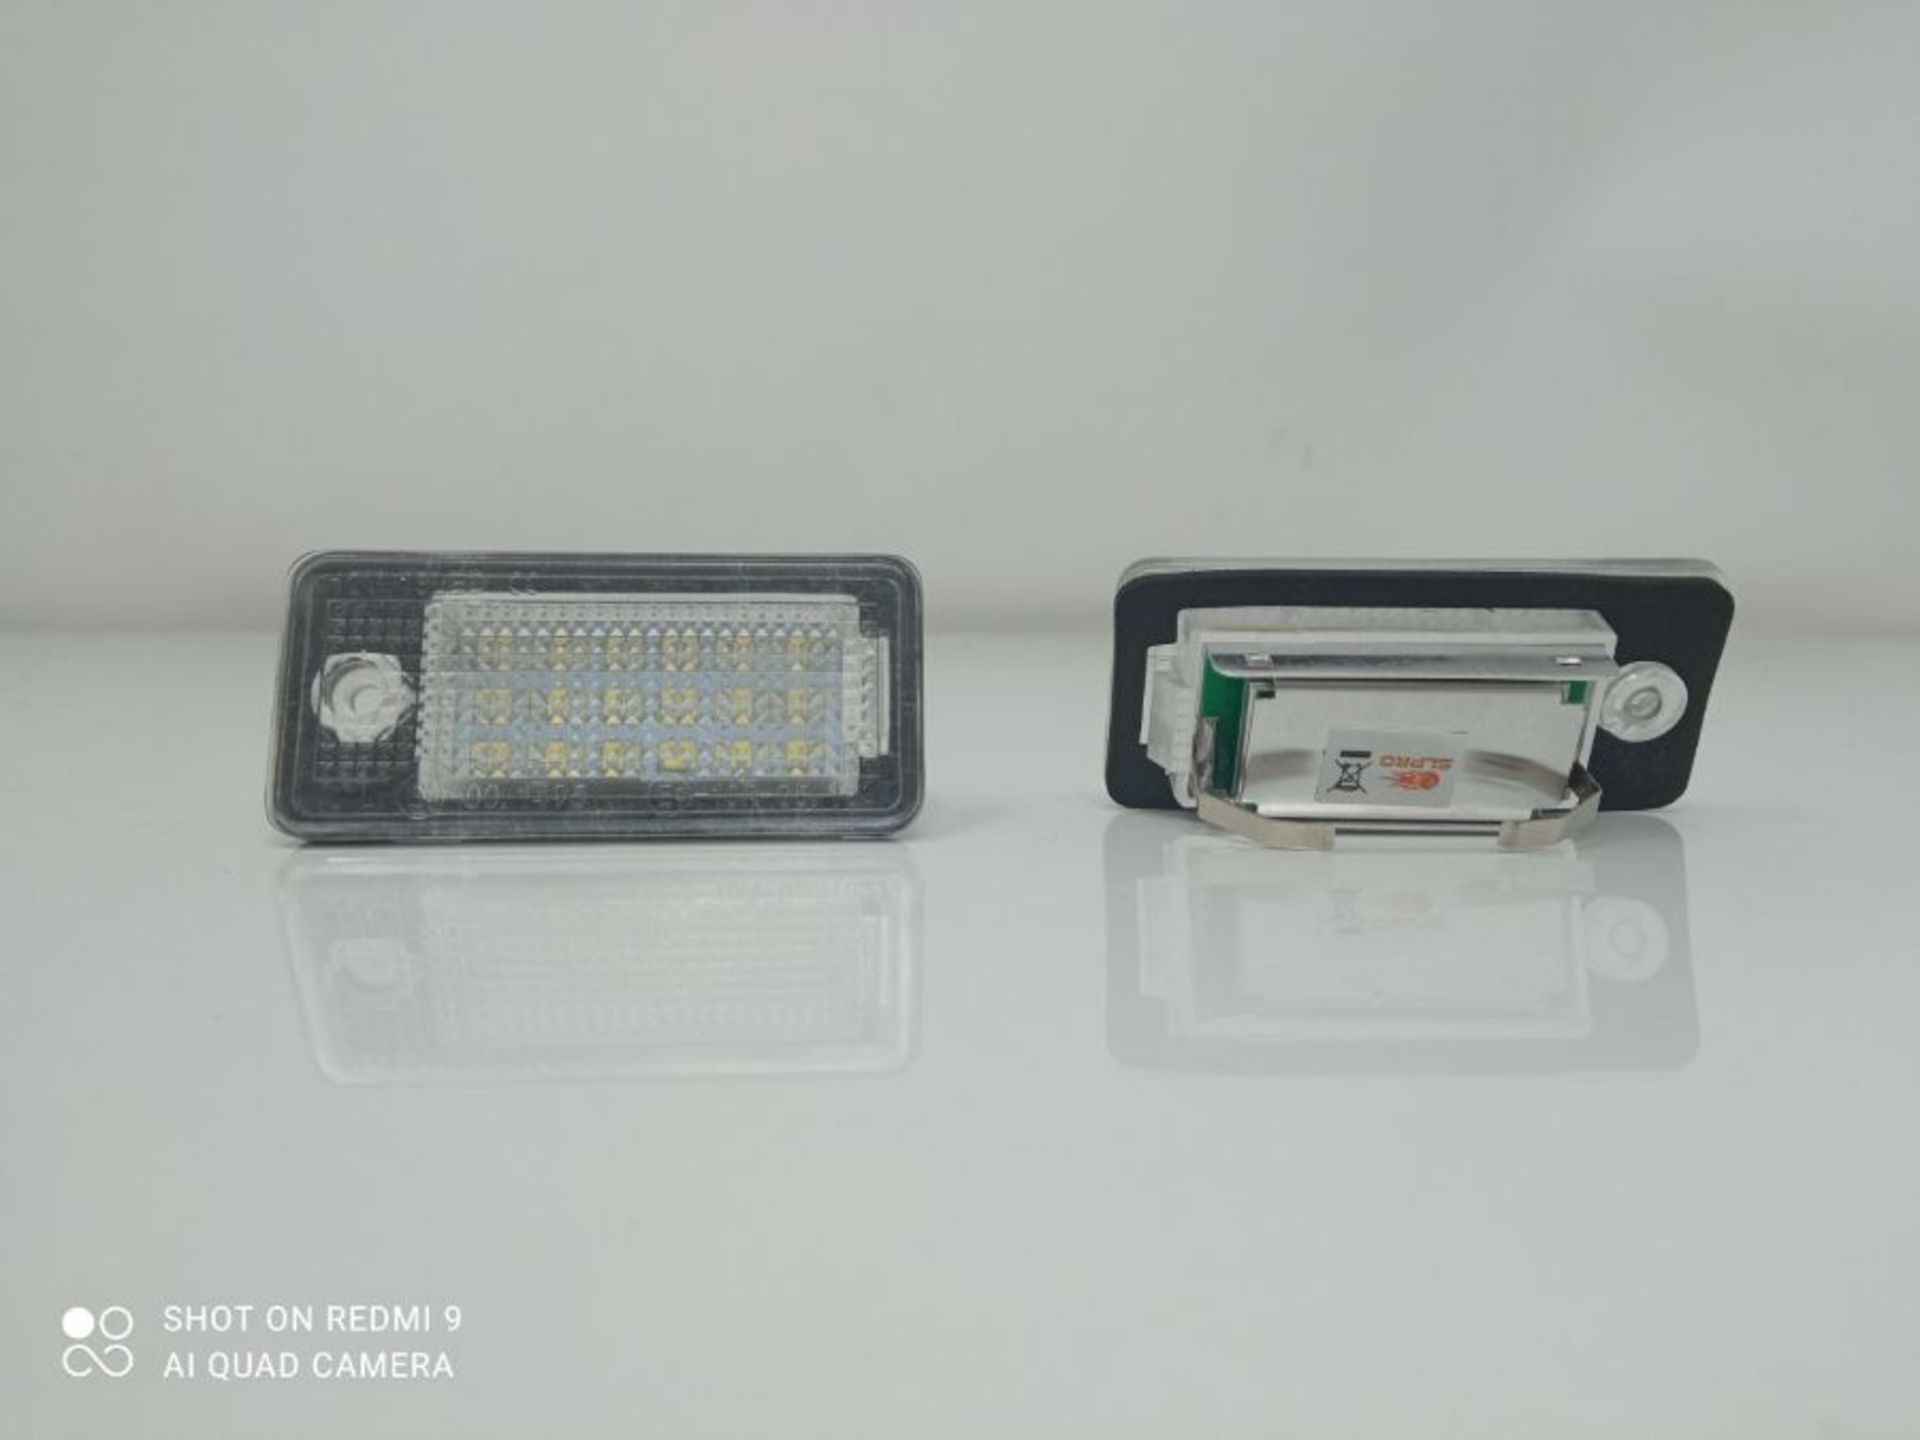 Kfz Dog LED Kennzeichenbeleuchtung | eingebauter CAN-Bus-Widerstand | kompatibel mit d - Image 2 of 2